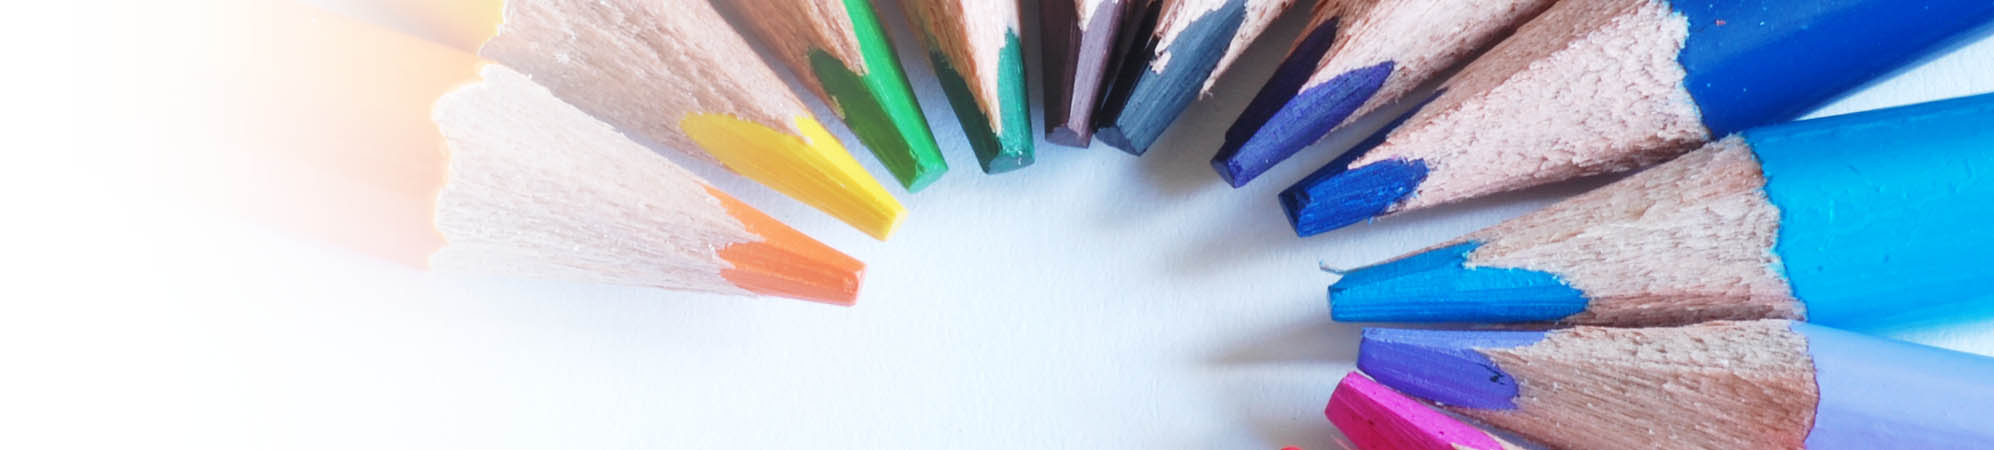 Farbige Buntstifte sind in einem Halbkreis mit der Mine zueinander und farblich von lila bis orange sortiert und angeordnet. Vermittelt wird ein Zusammenkommen von Vielfalt und Individualität.